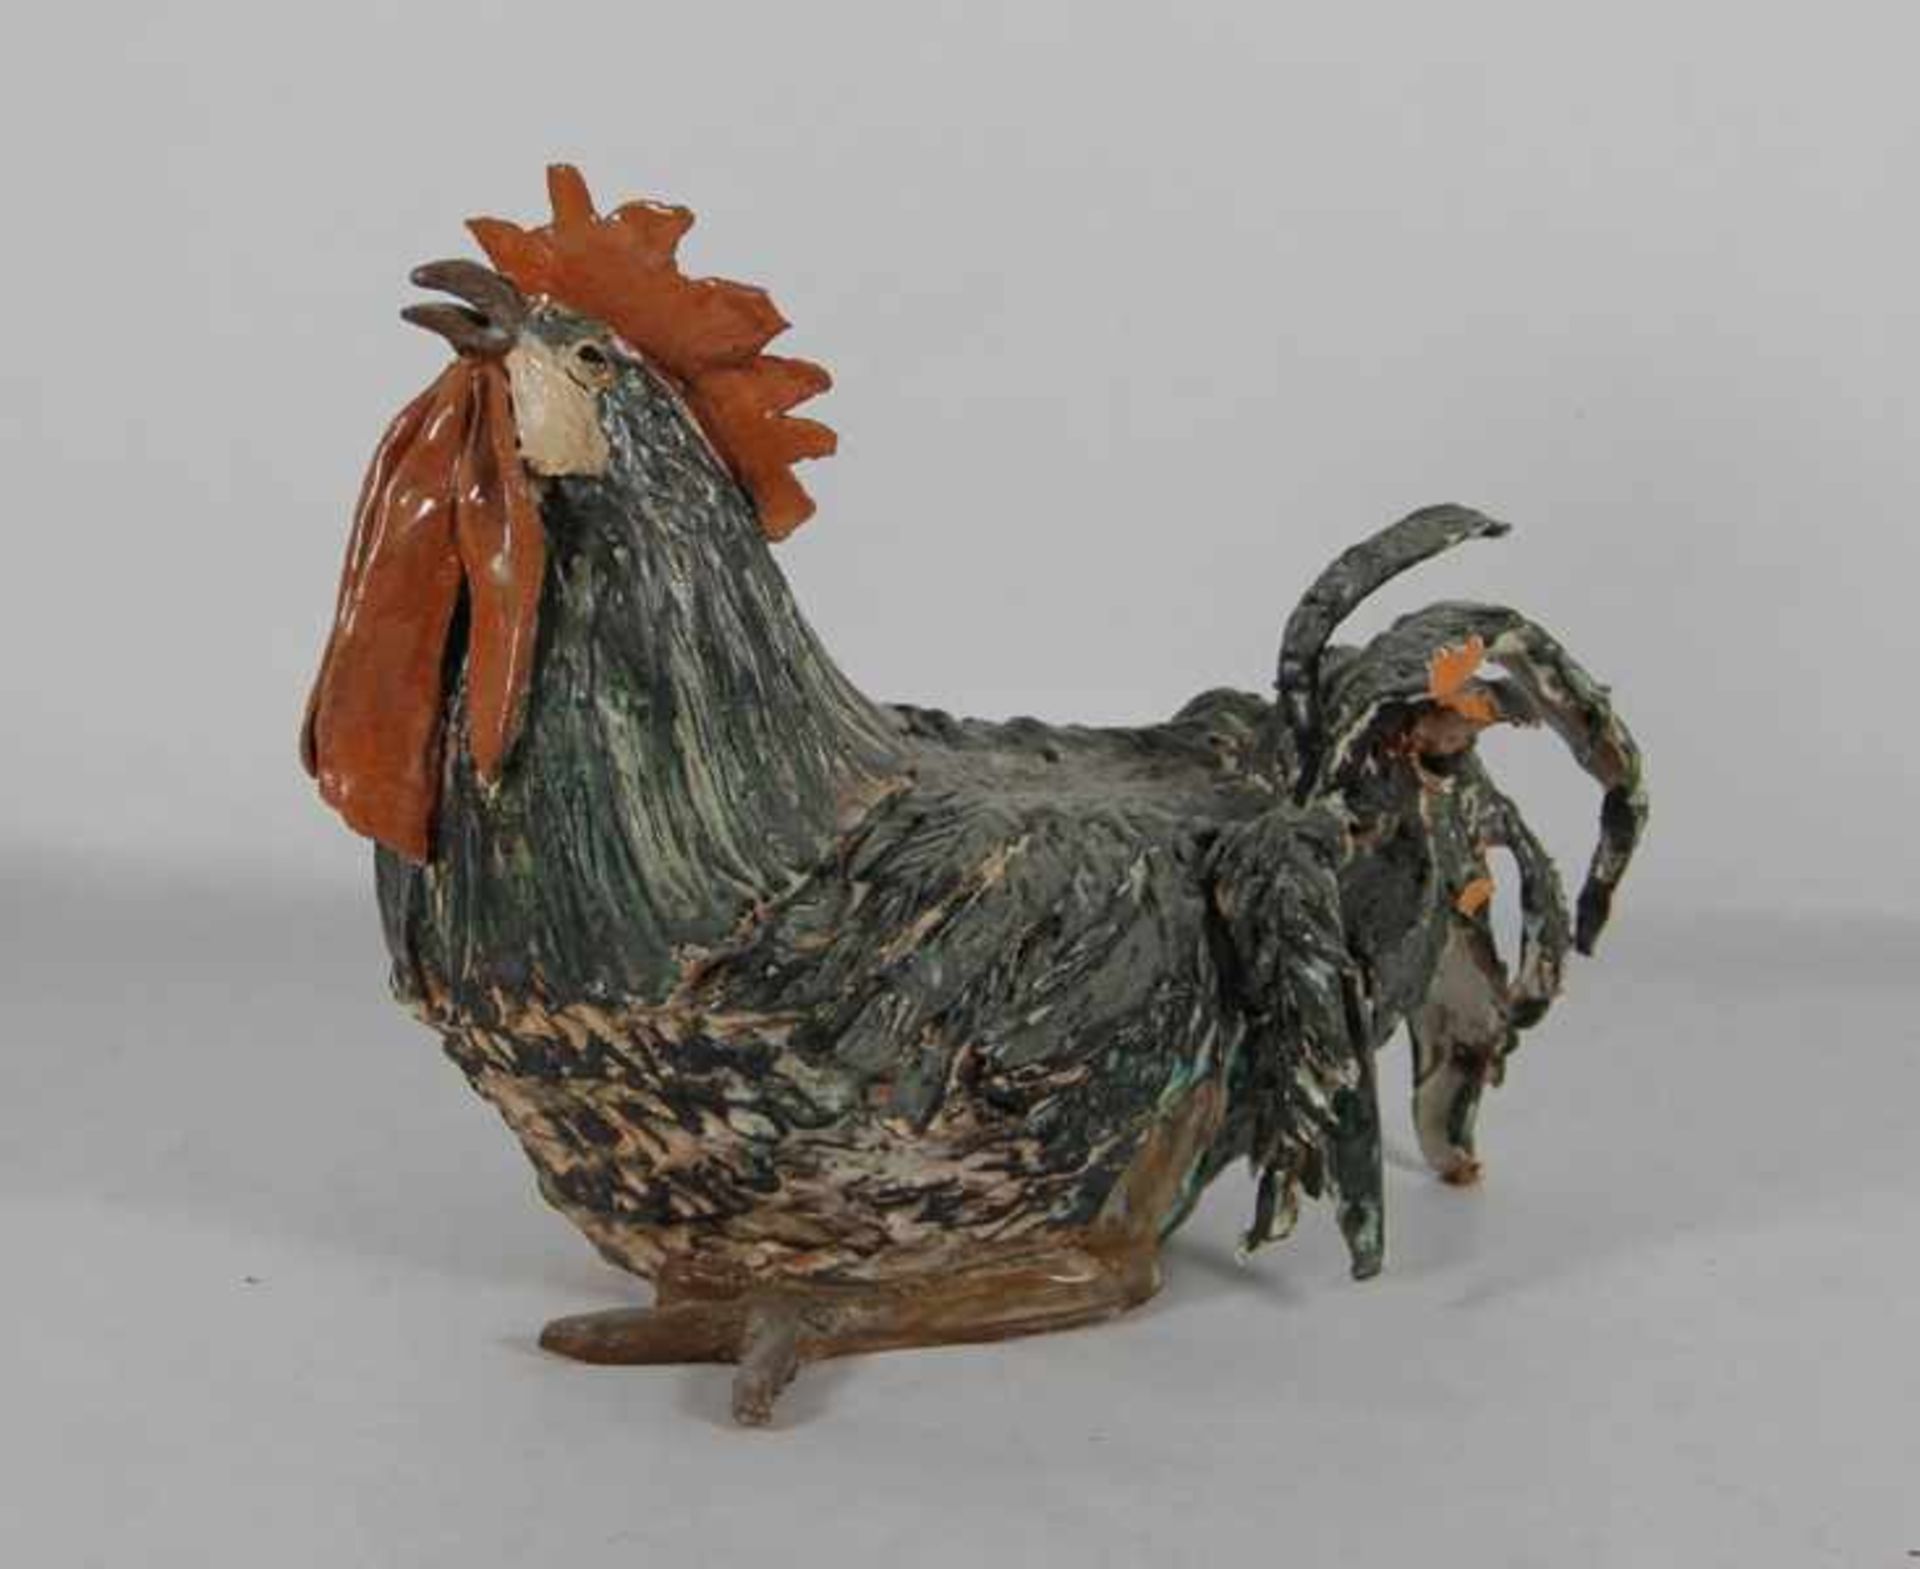 Terracotta-Hahnzeitgenössisch, Terracottaplastik eines Hahns, verschiedenfarbig glasiert, Gebr.